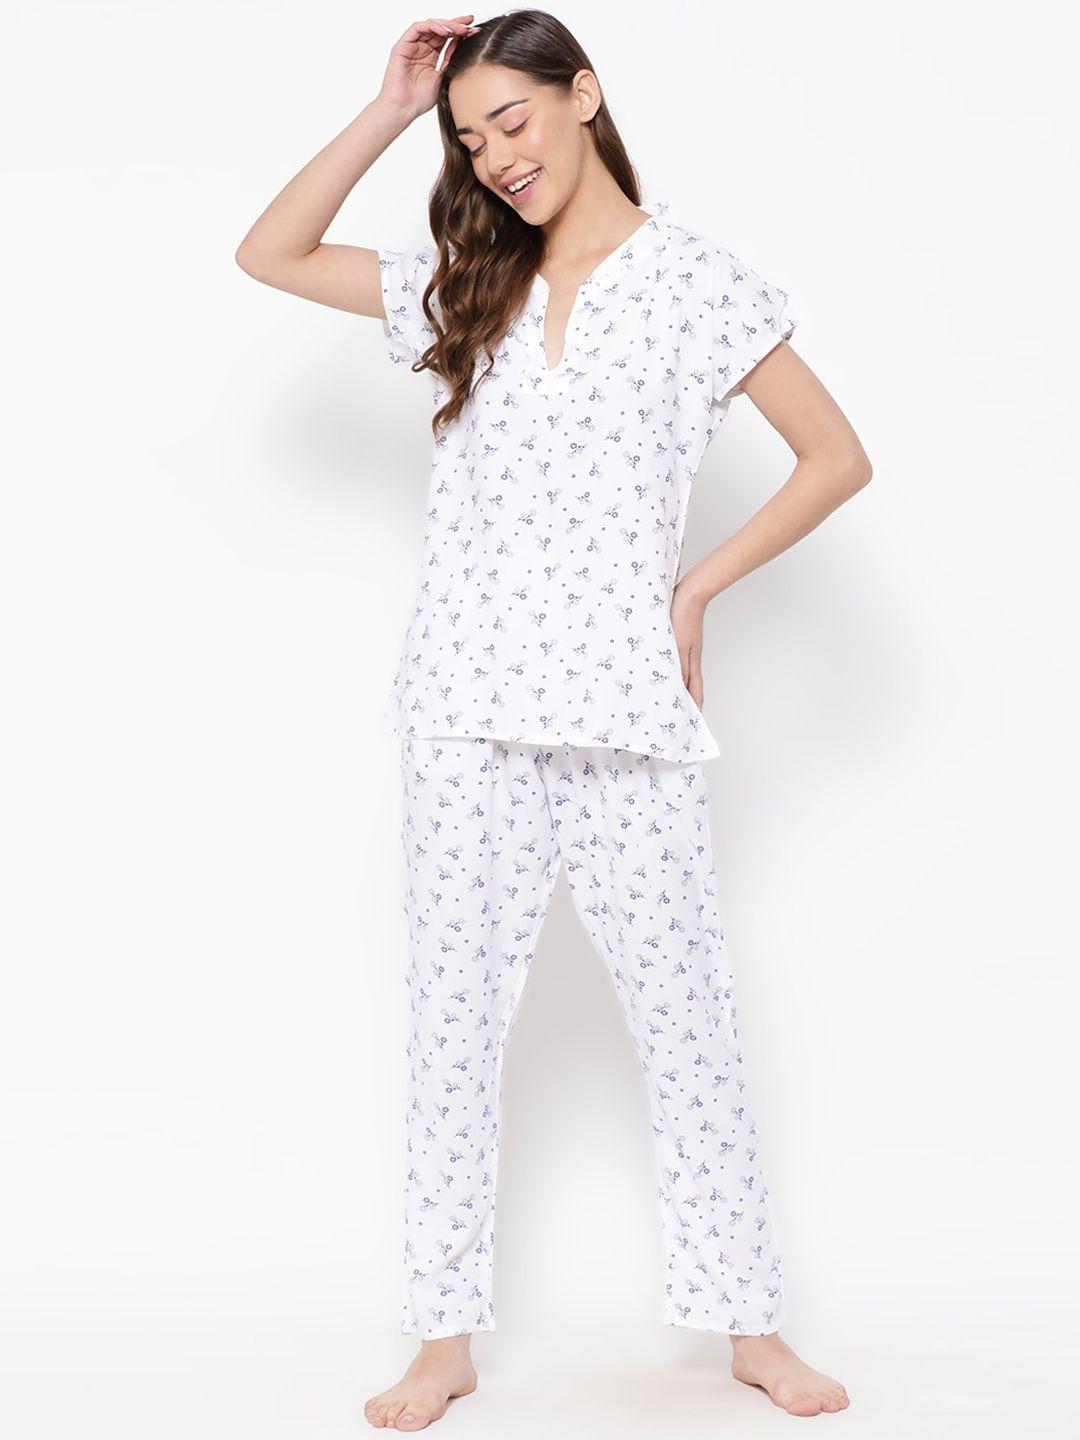 Clovia White & Blue Conversational Printed Top With Pyjamas